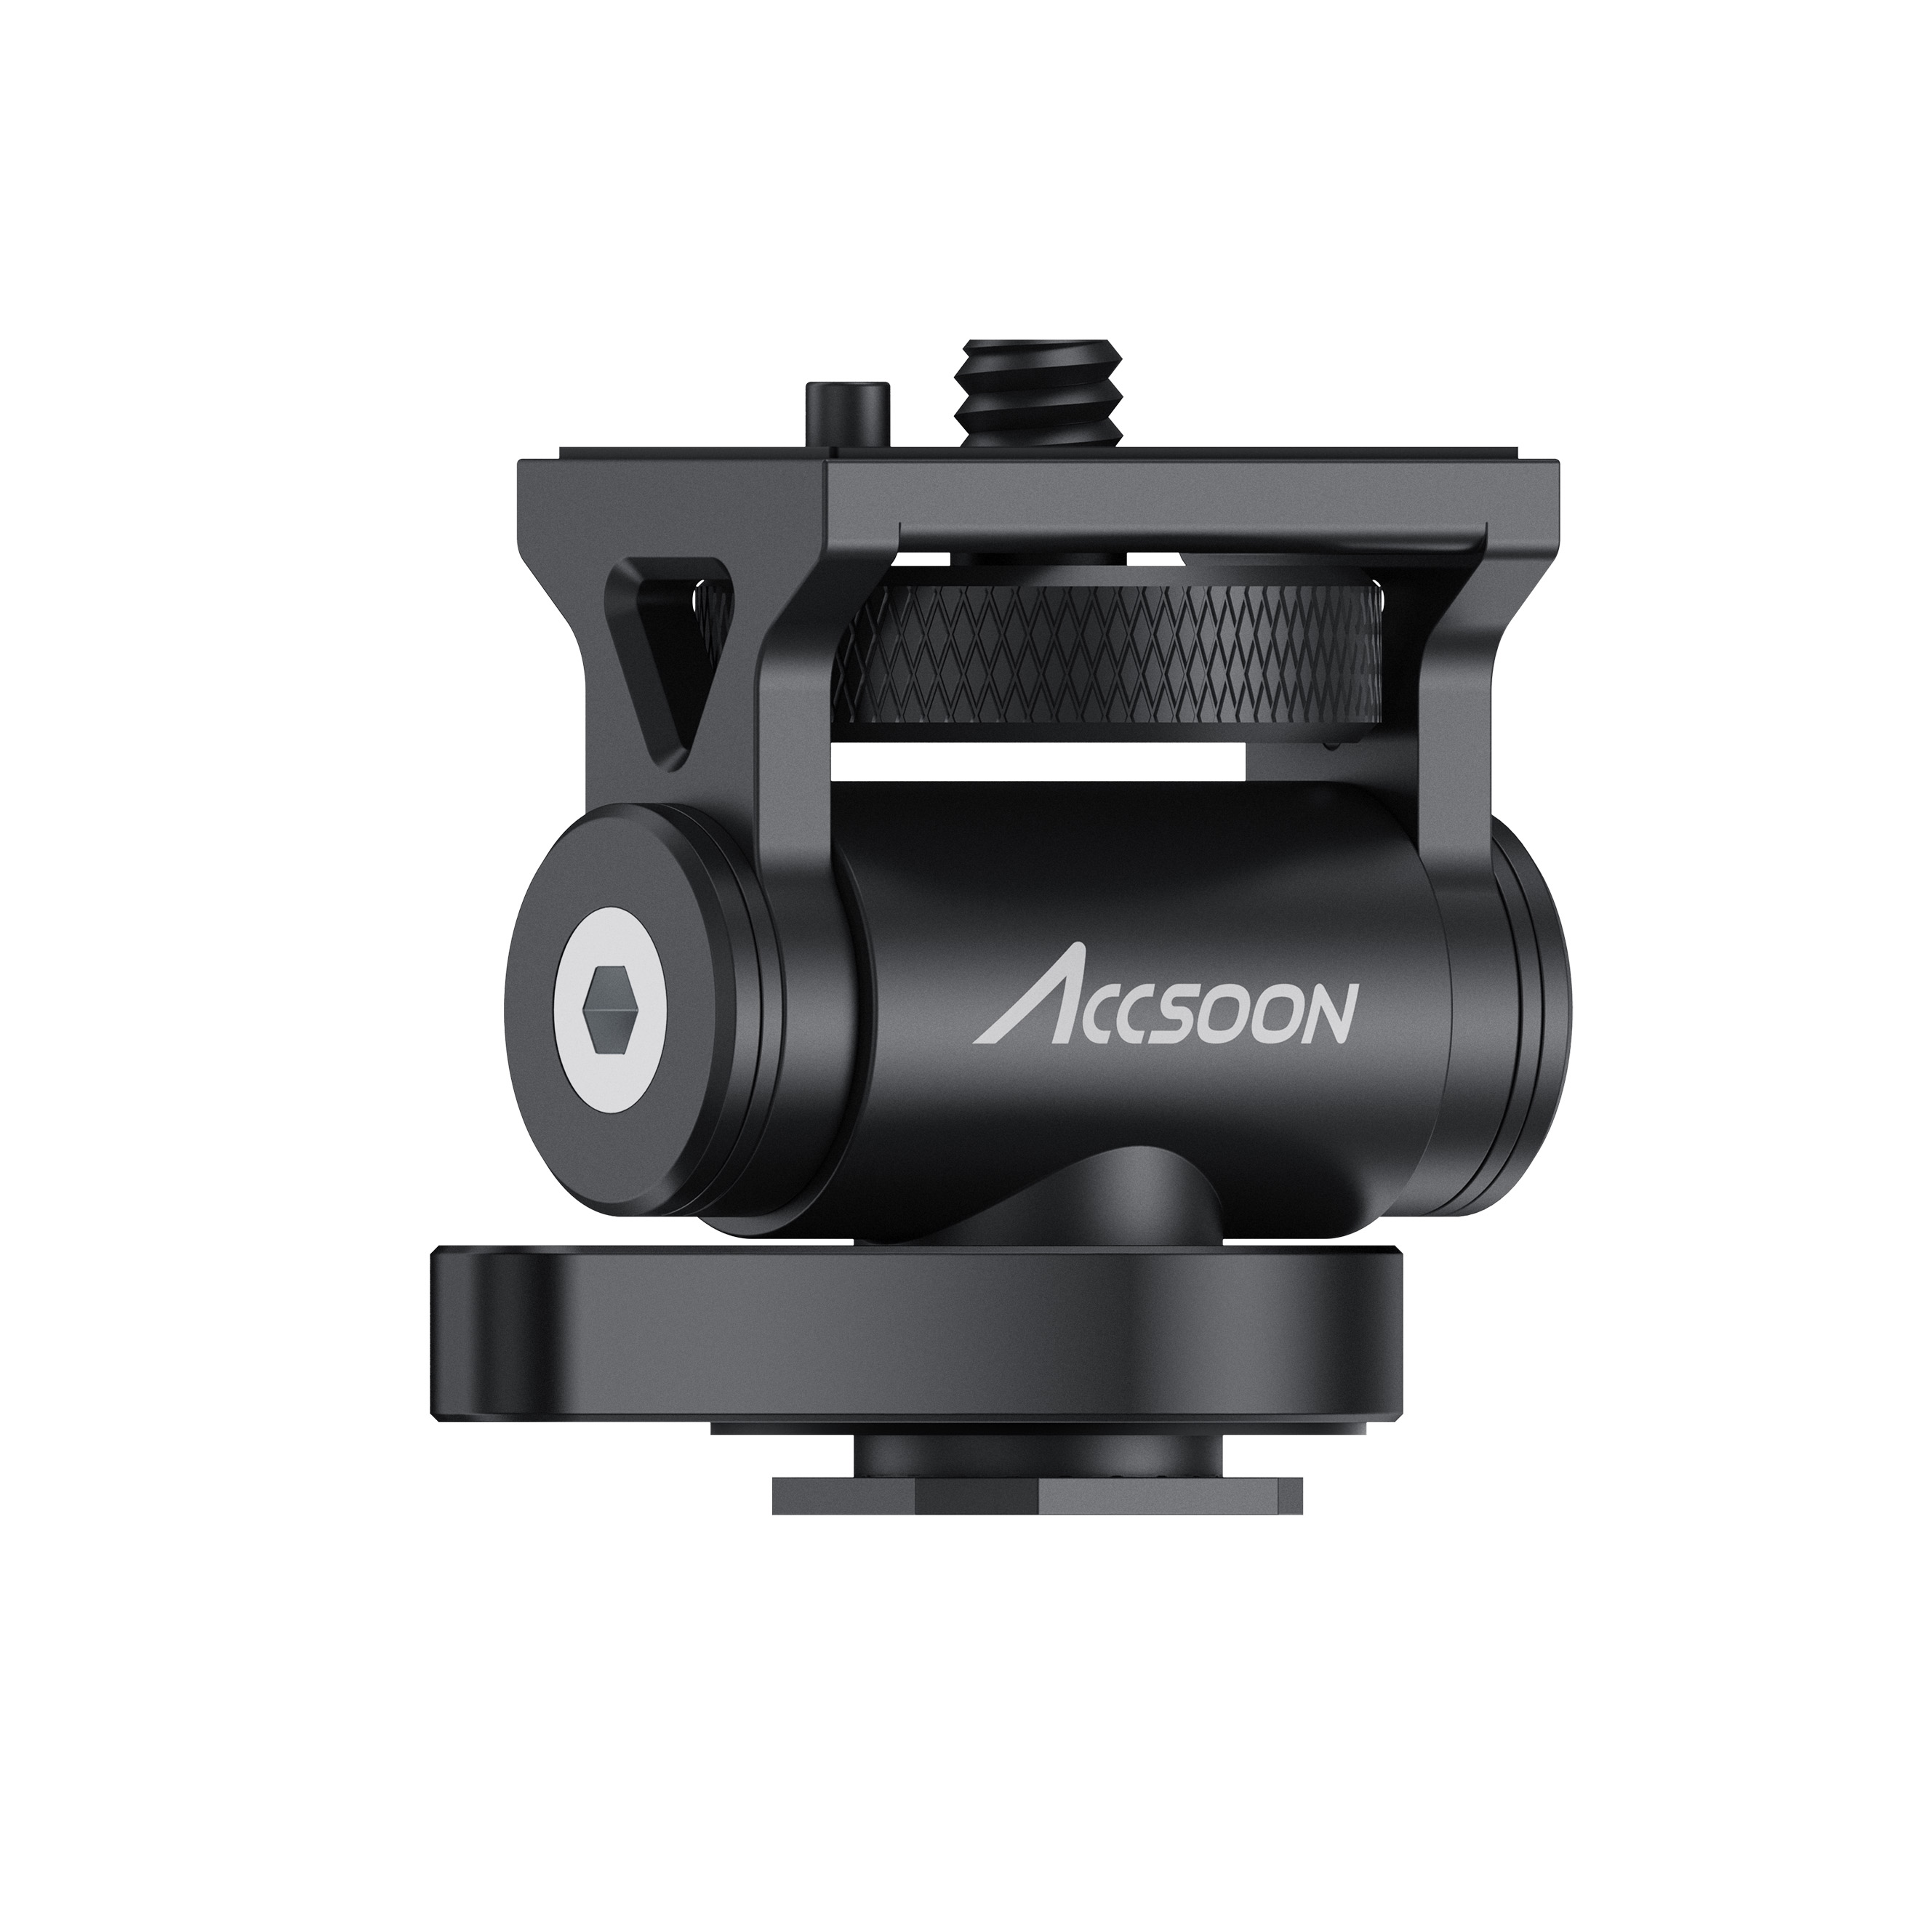   Accsoon AA-01   Ultra-mart